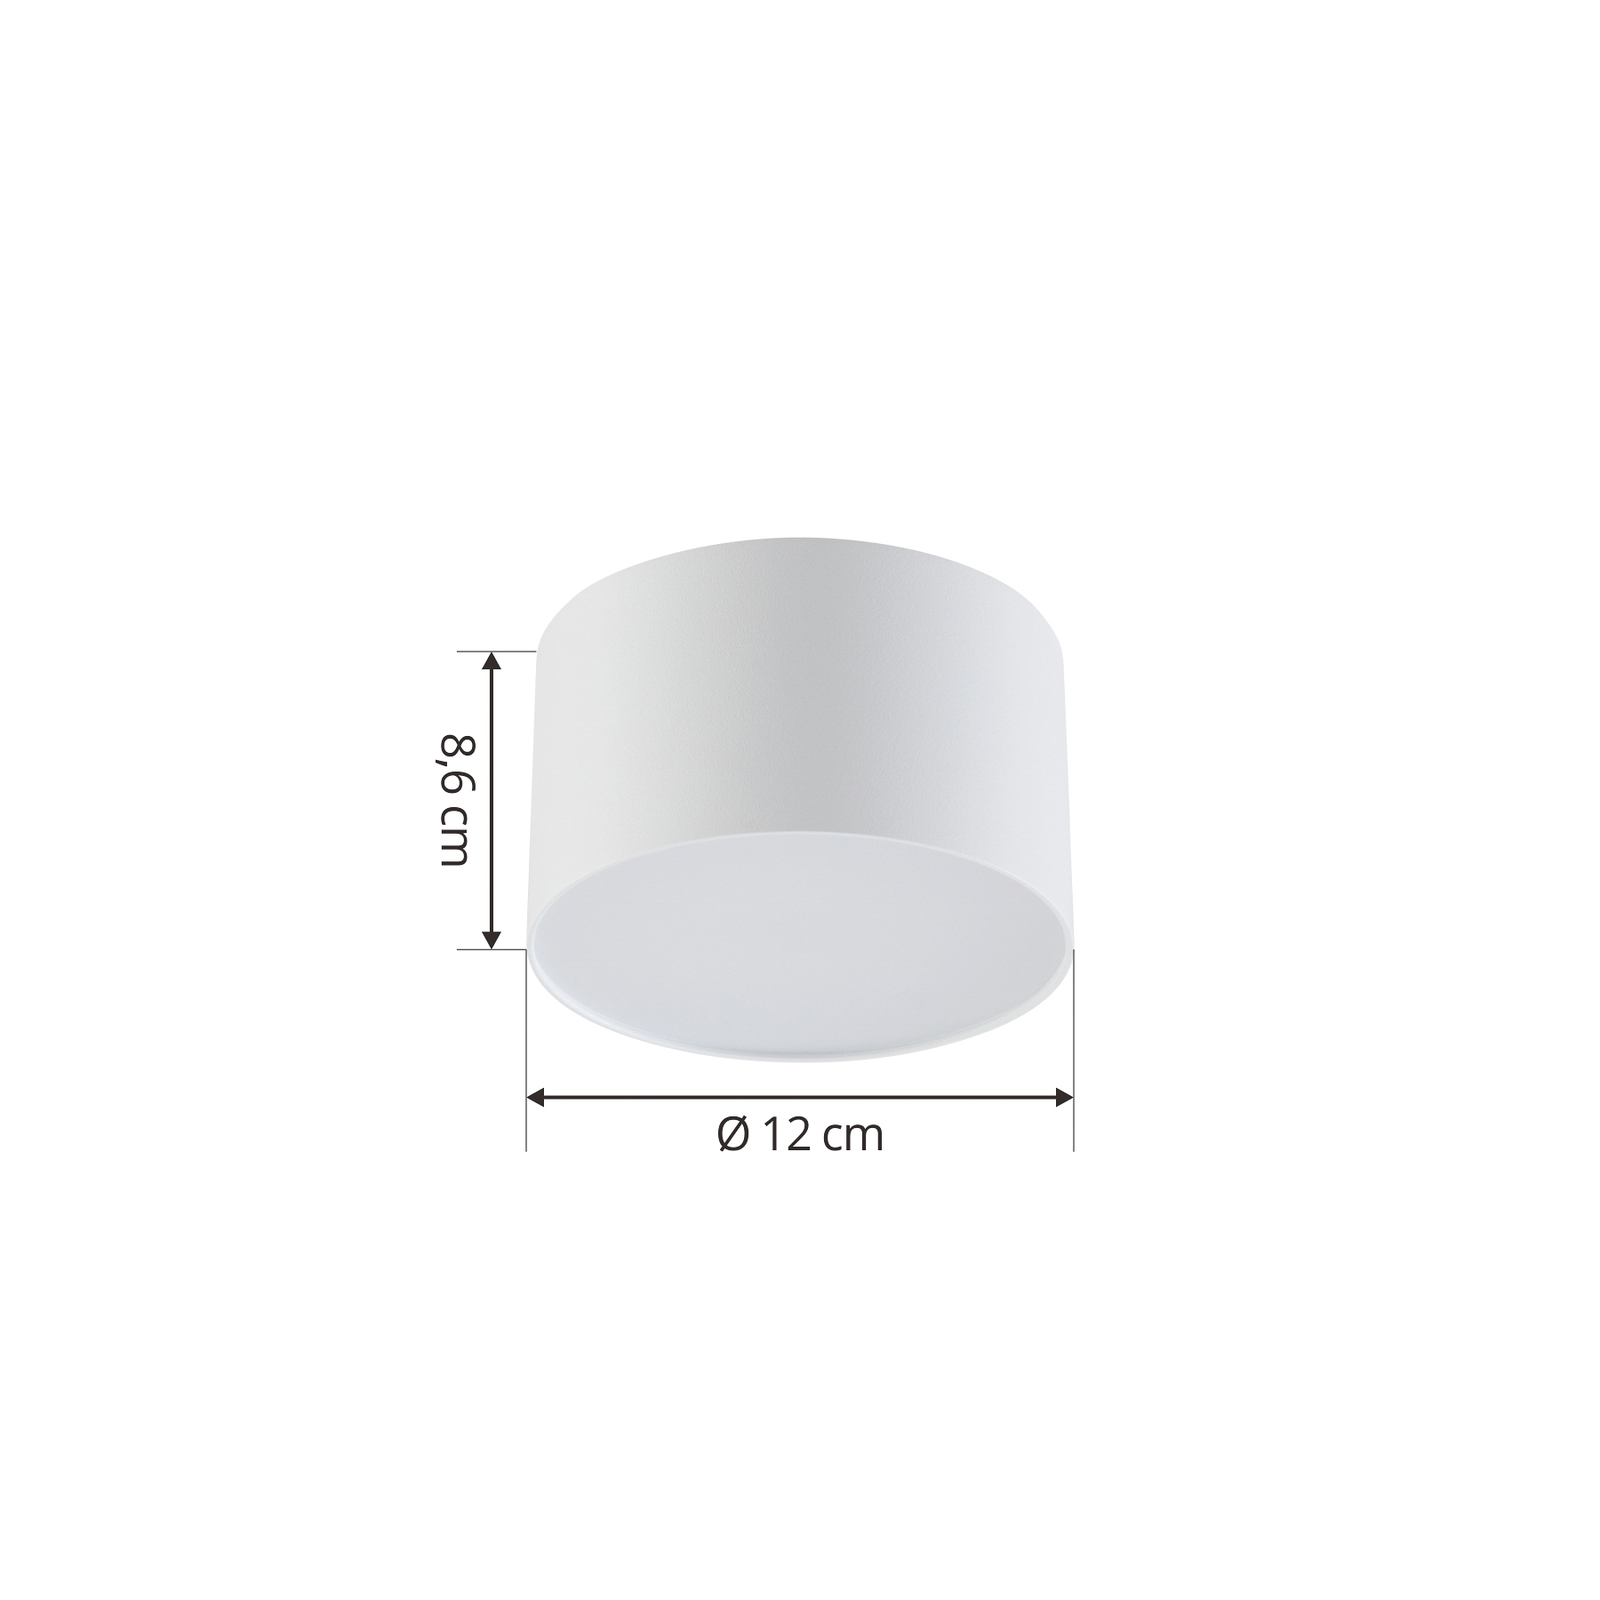 Faretto LED Nivoria di Lindby, 11 x 6,5 cm, bianco sabbia, set di 4 pezzi